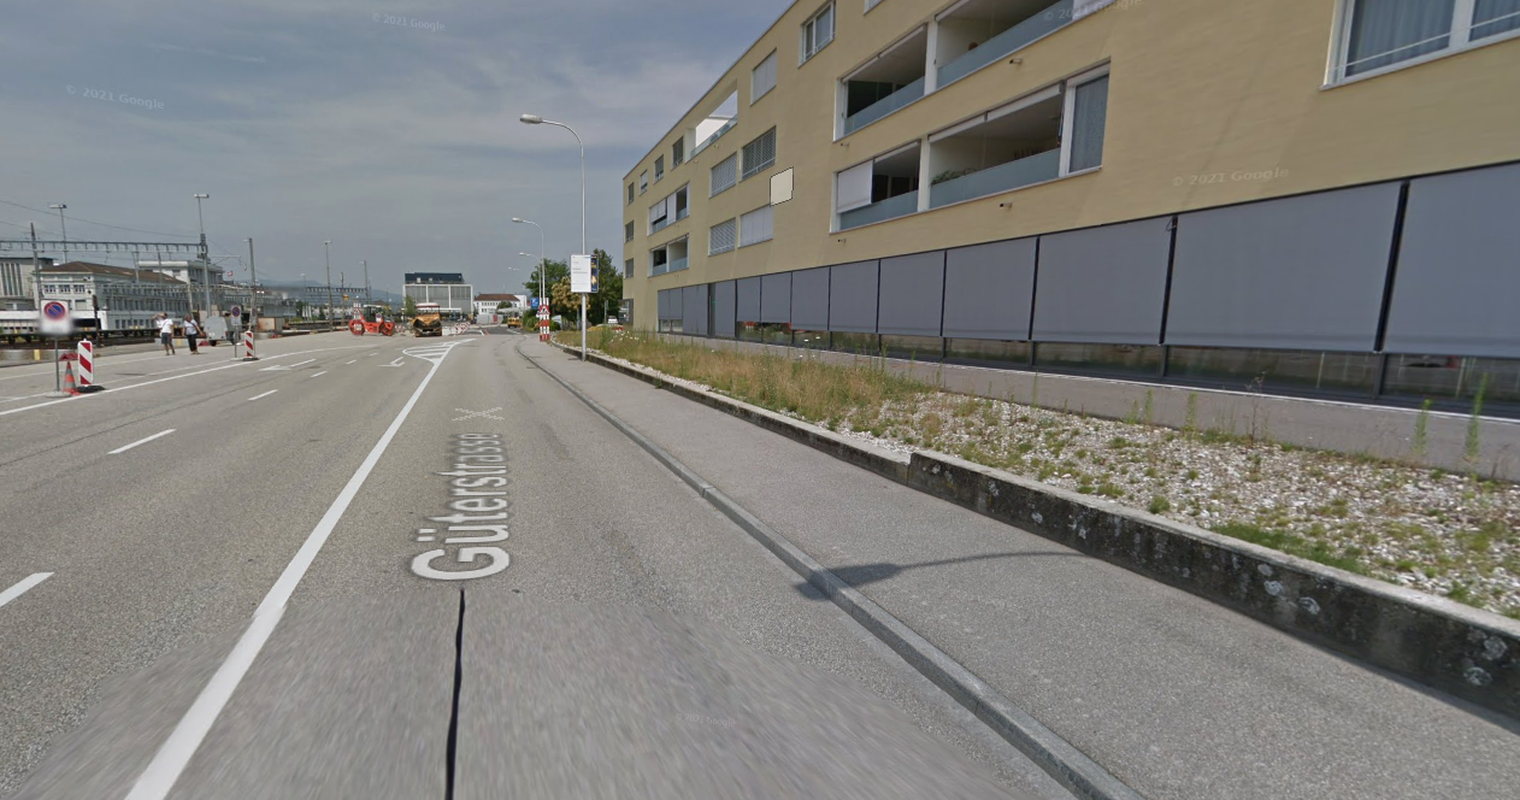 An Grenze zu Luzern: Mann verletzt mehrere Personen